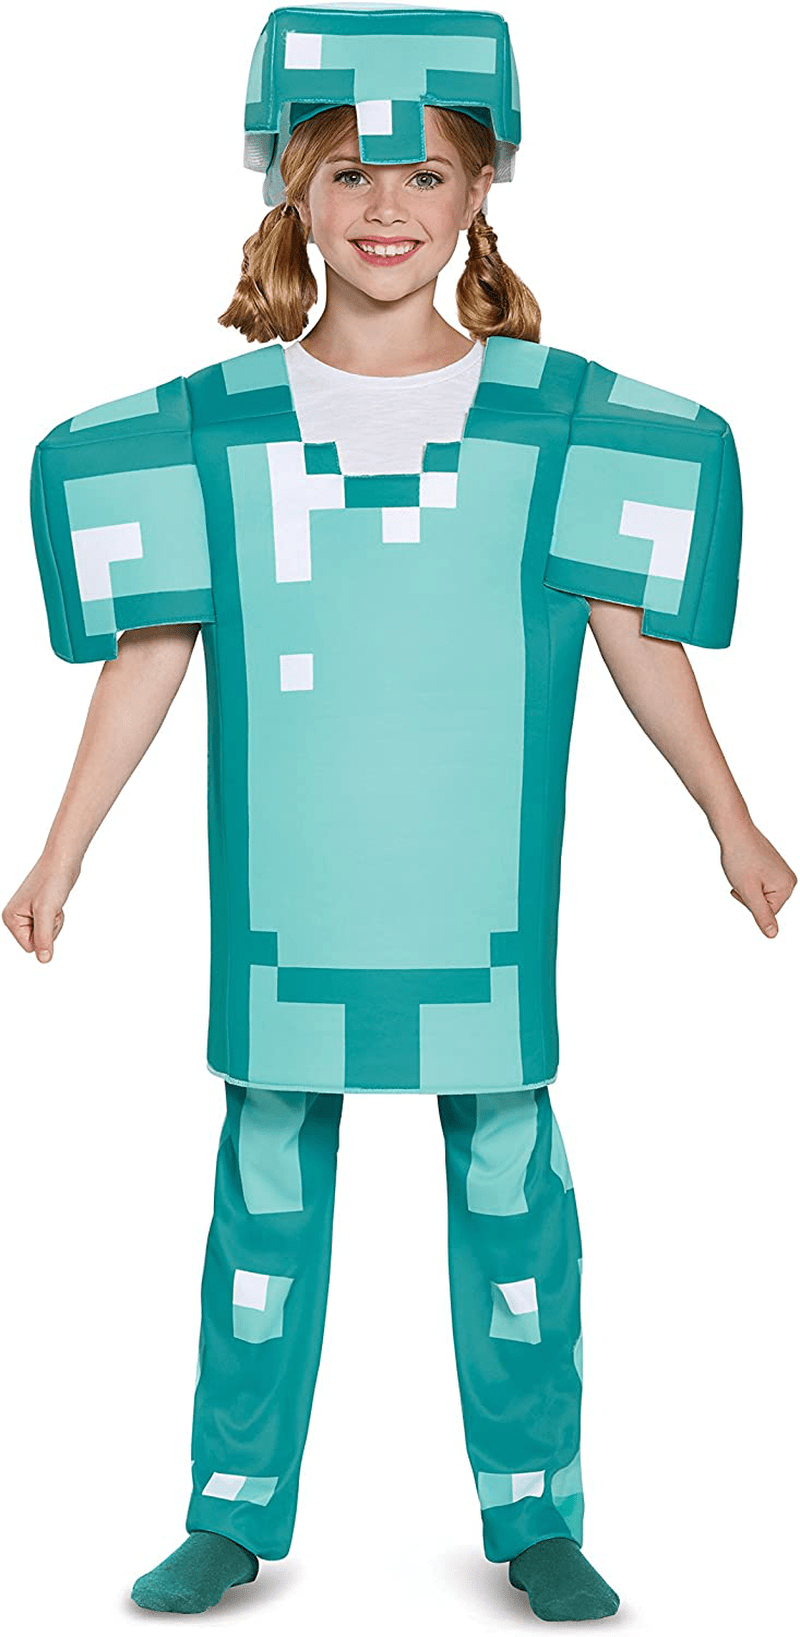 Armor Deluxe Minecraft Costume, Blue, Medium (7-8) Apparel & Accessories > Costumes & Accessories > Costumes Disguise   